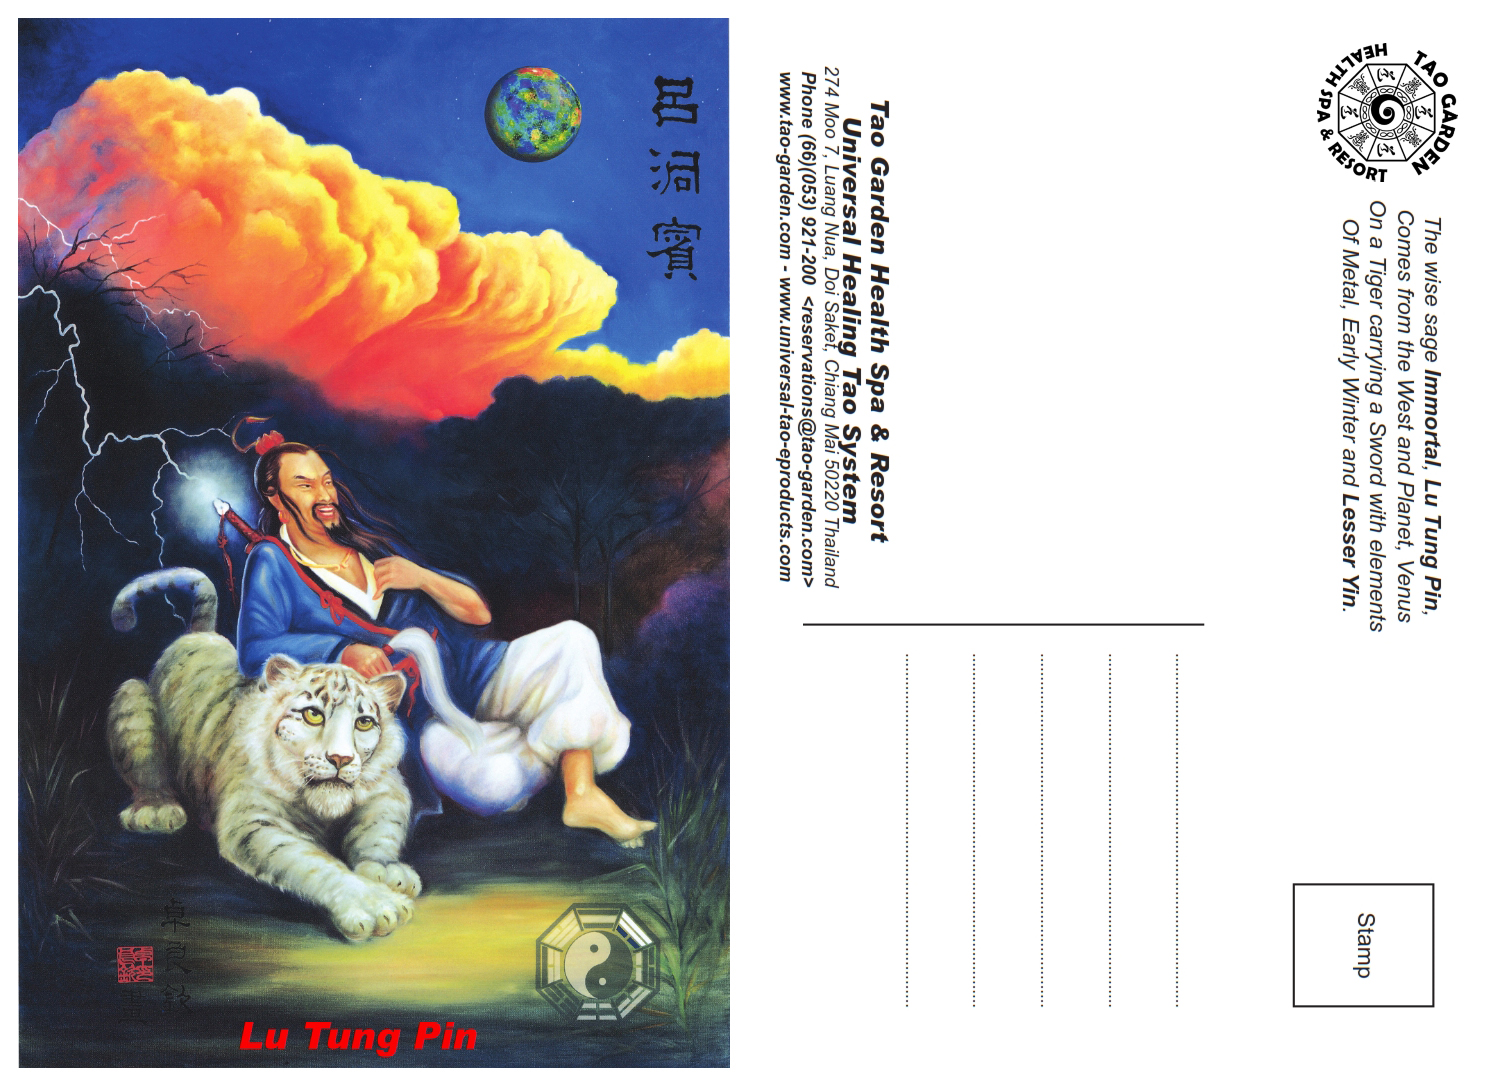 Taoist Immortal, Lu Tung Pin (E-Post Card) [DL-PC01]